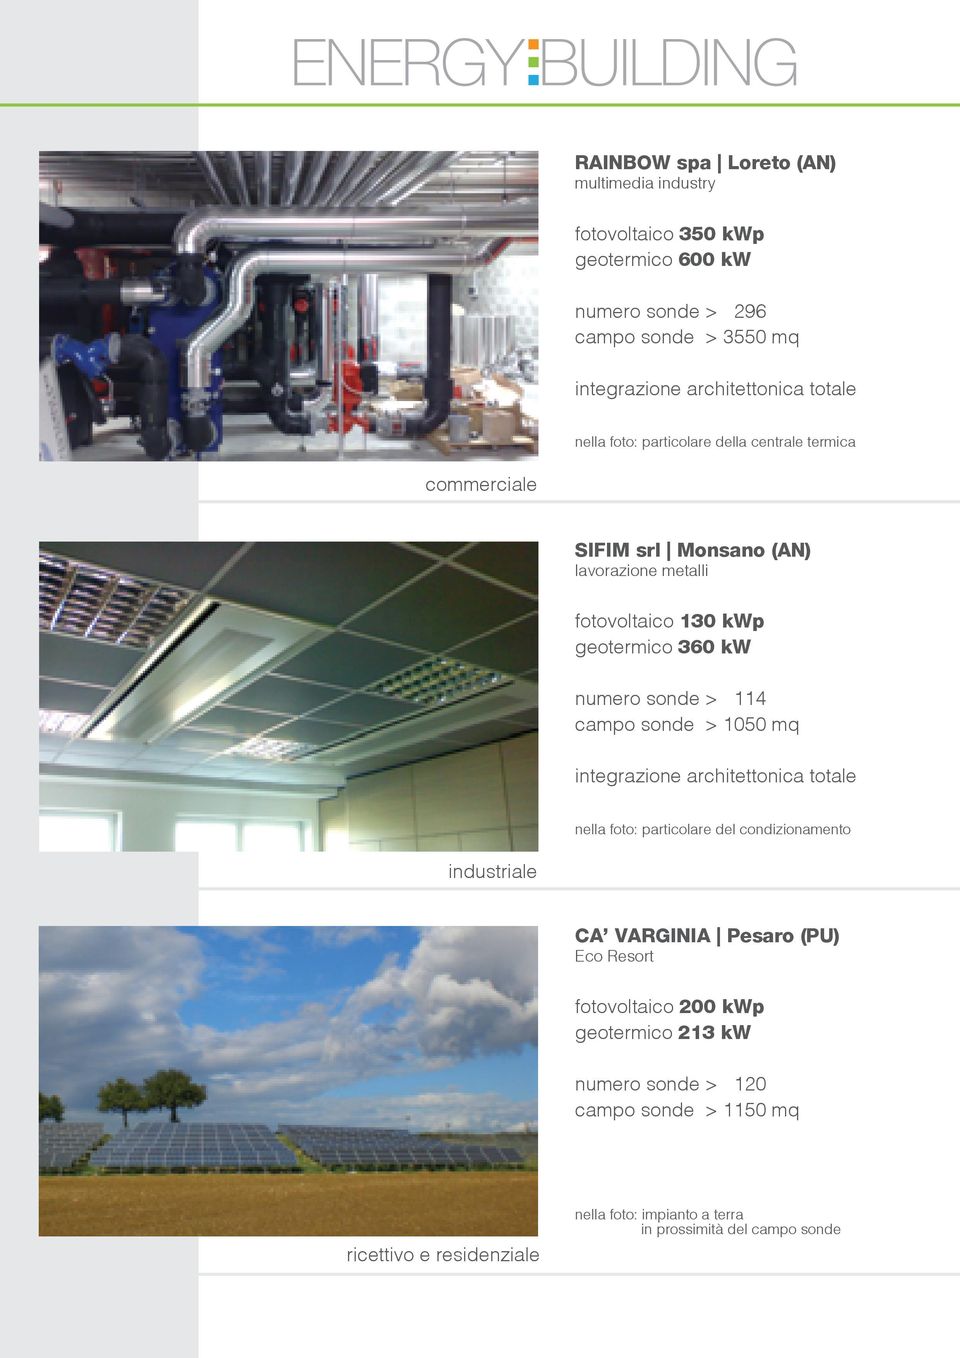 sonde > 114 campo sonde > 1050 mq integrazione architettonica totale nella foto: particolare del condizionamento industriale CA VARGINIA Pesaro (PU) Eco